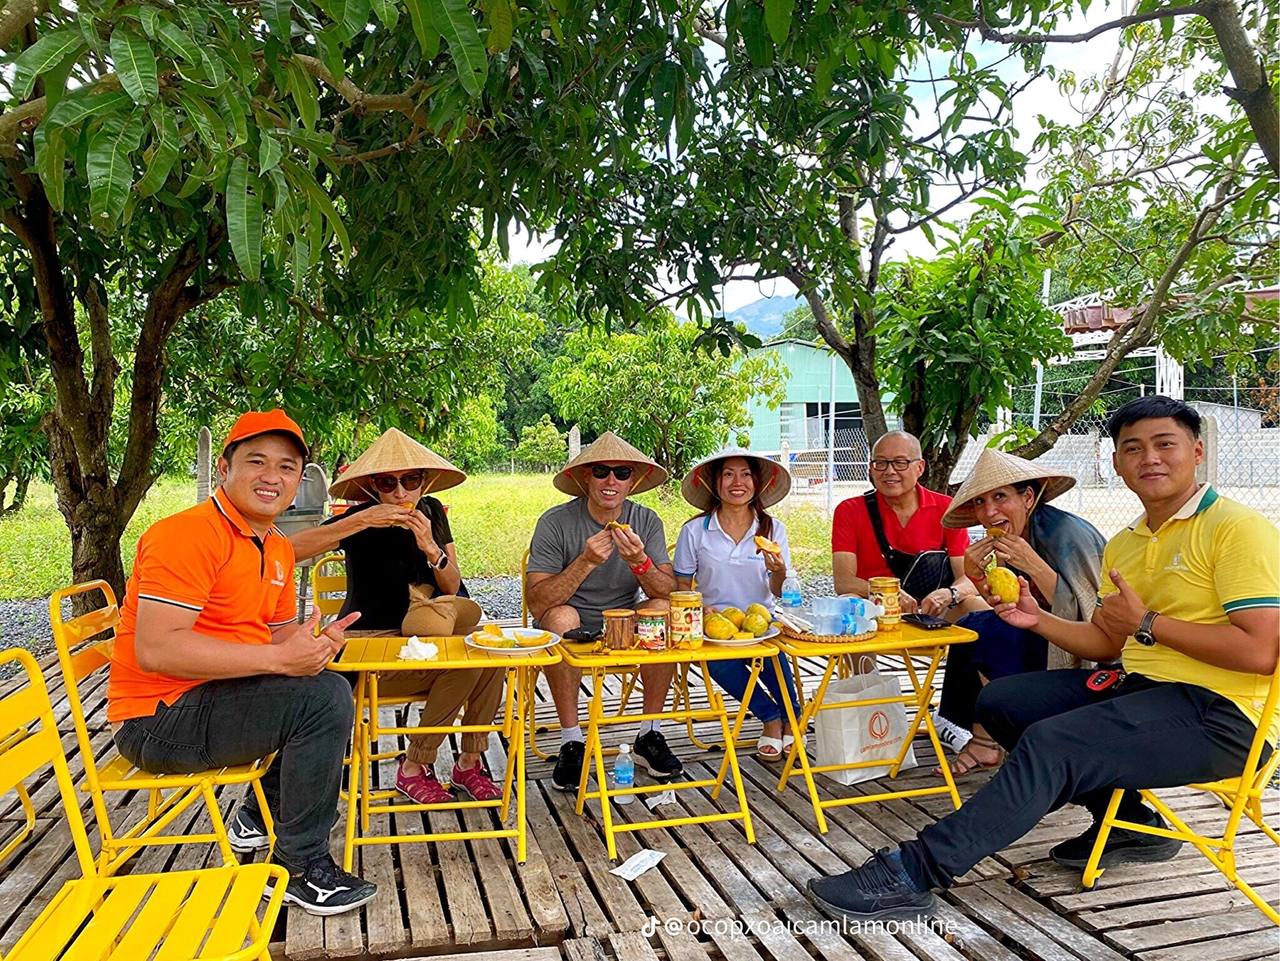 Du lịch Nha Trang phải trải nghiệm vườn xoài 